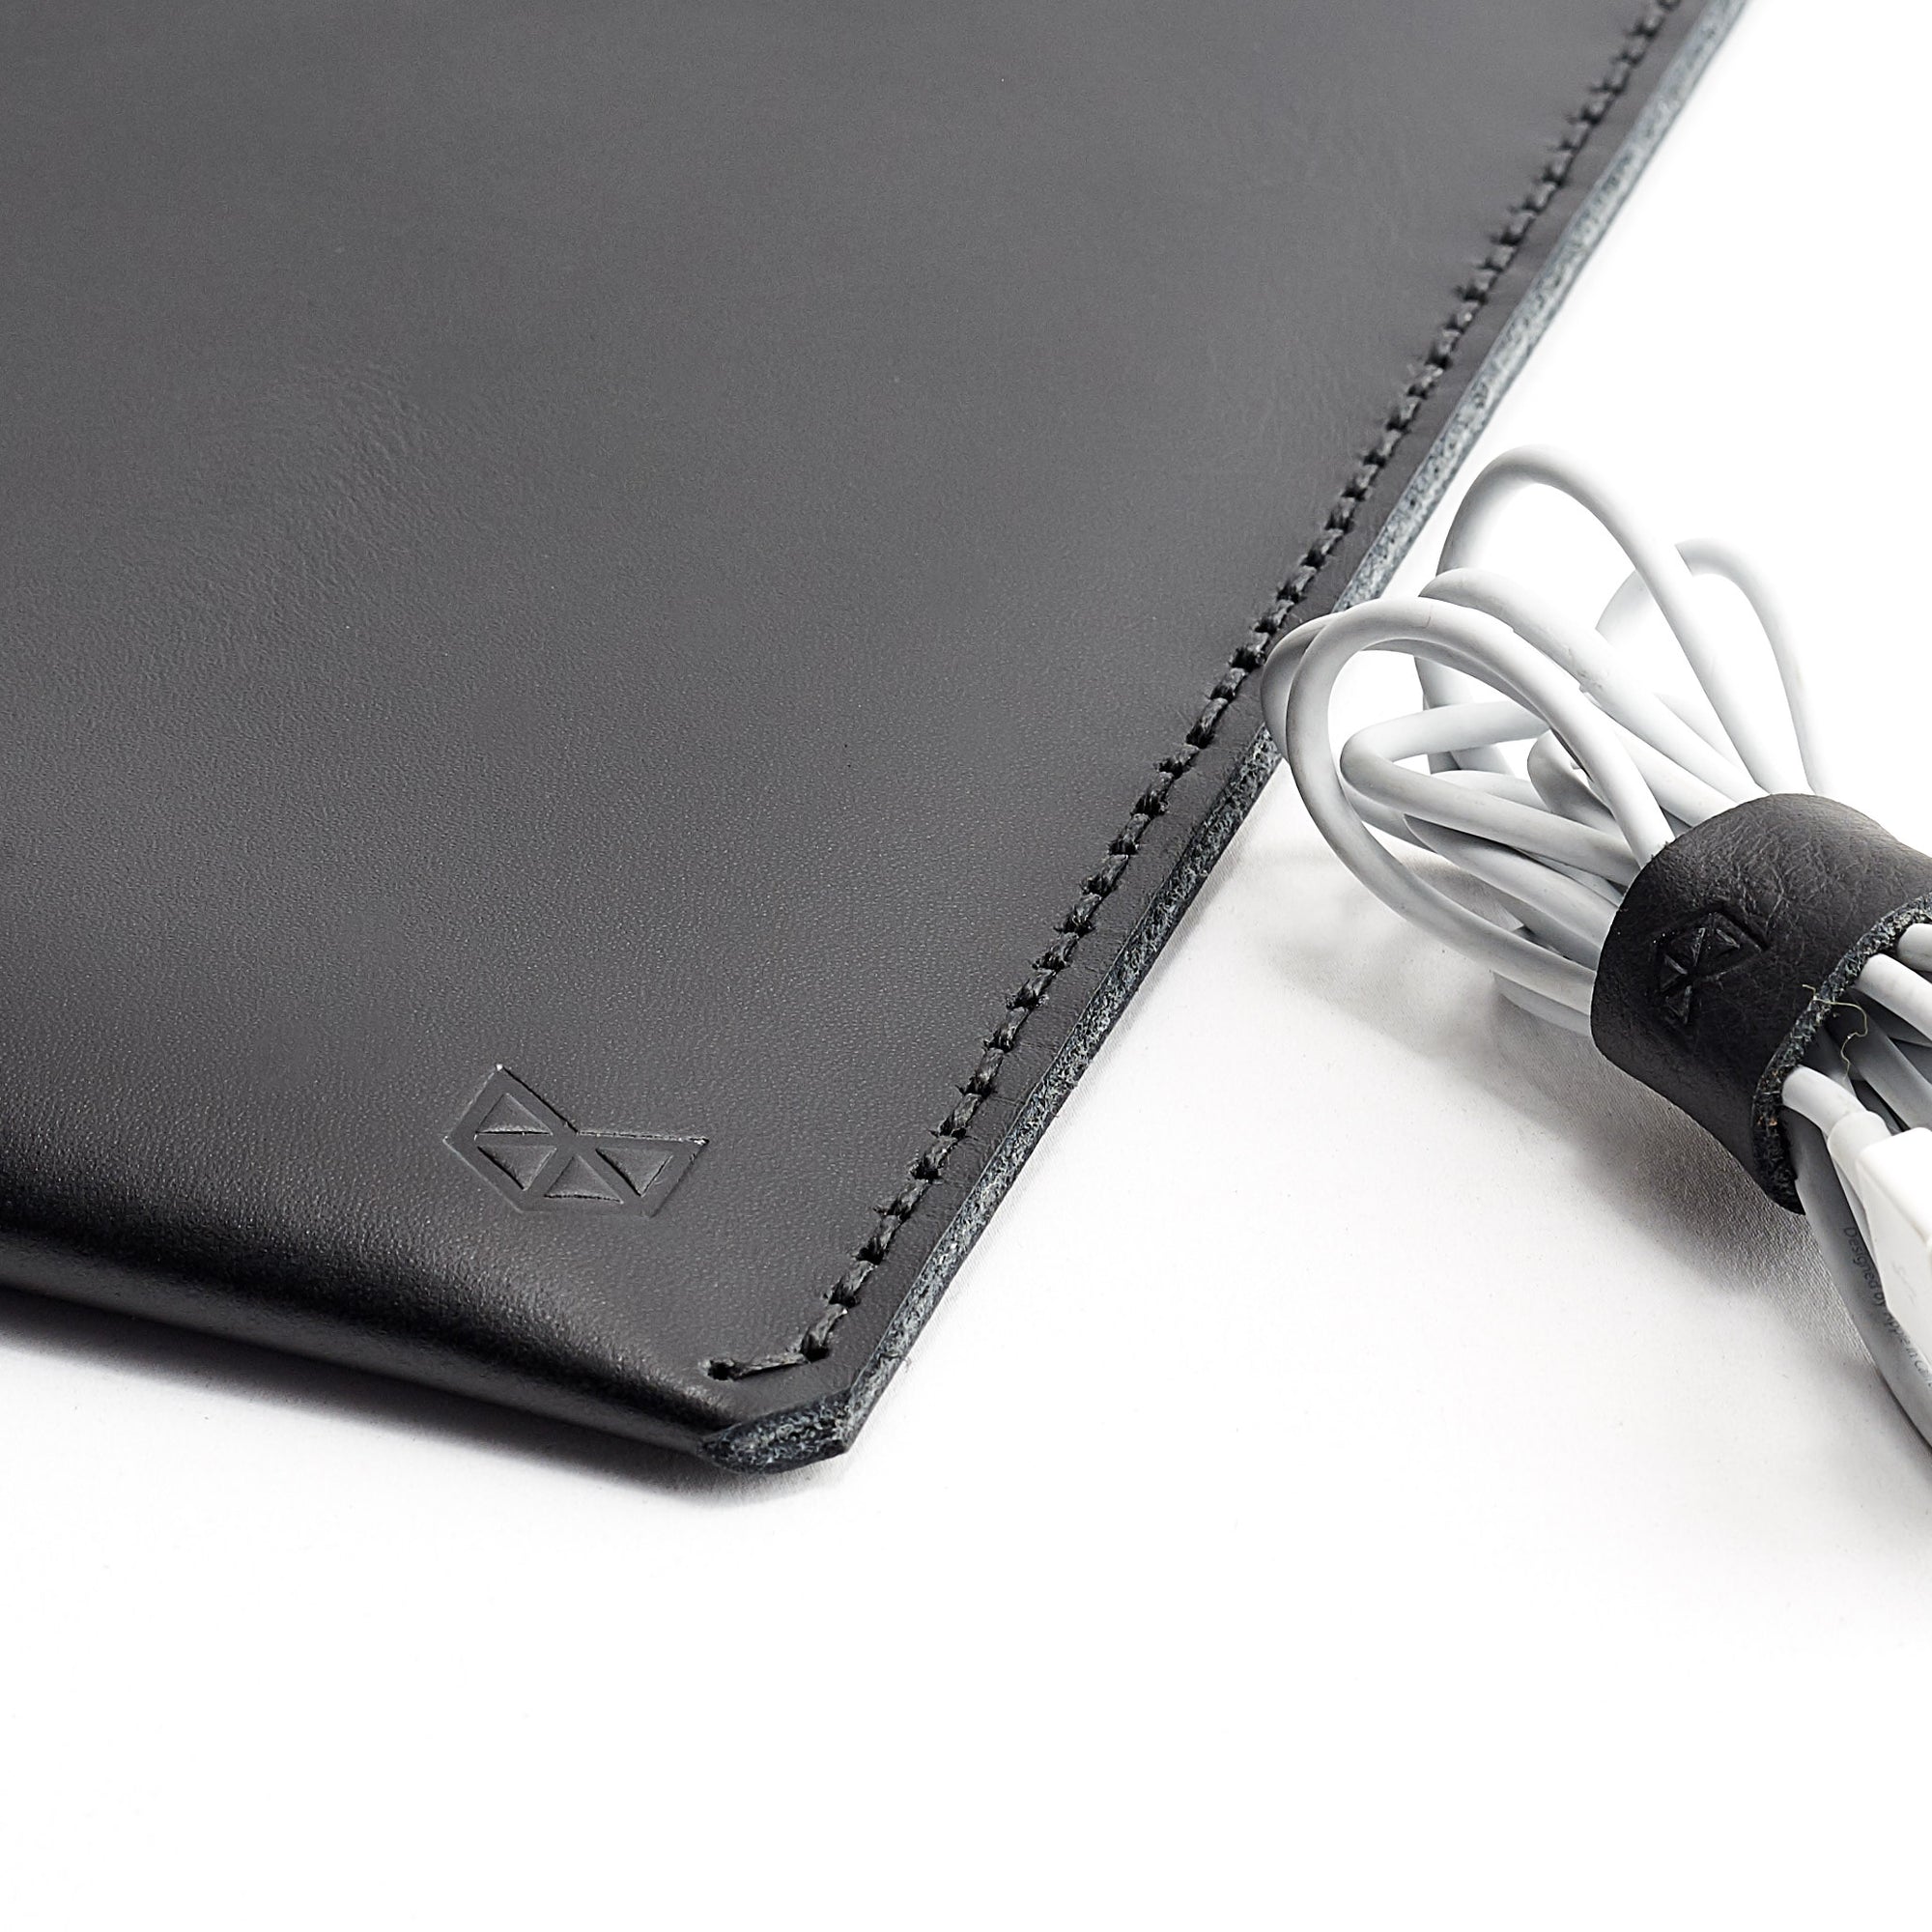 Capra Leather iPad pro leather sleeve. Black leather sleeve for iPad pro 10.5 inch 12.9 inch. Mens gifts 